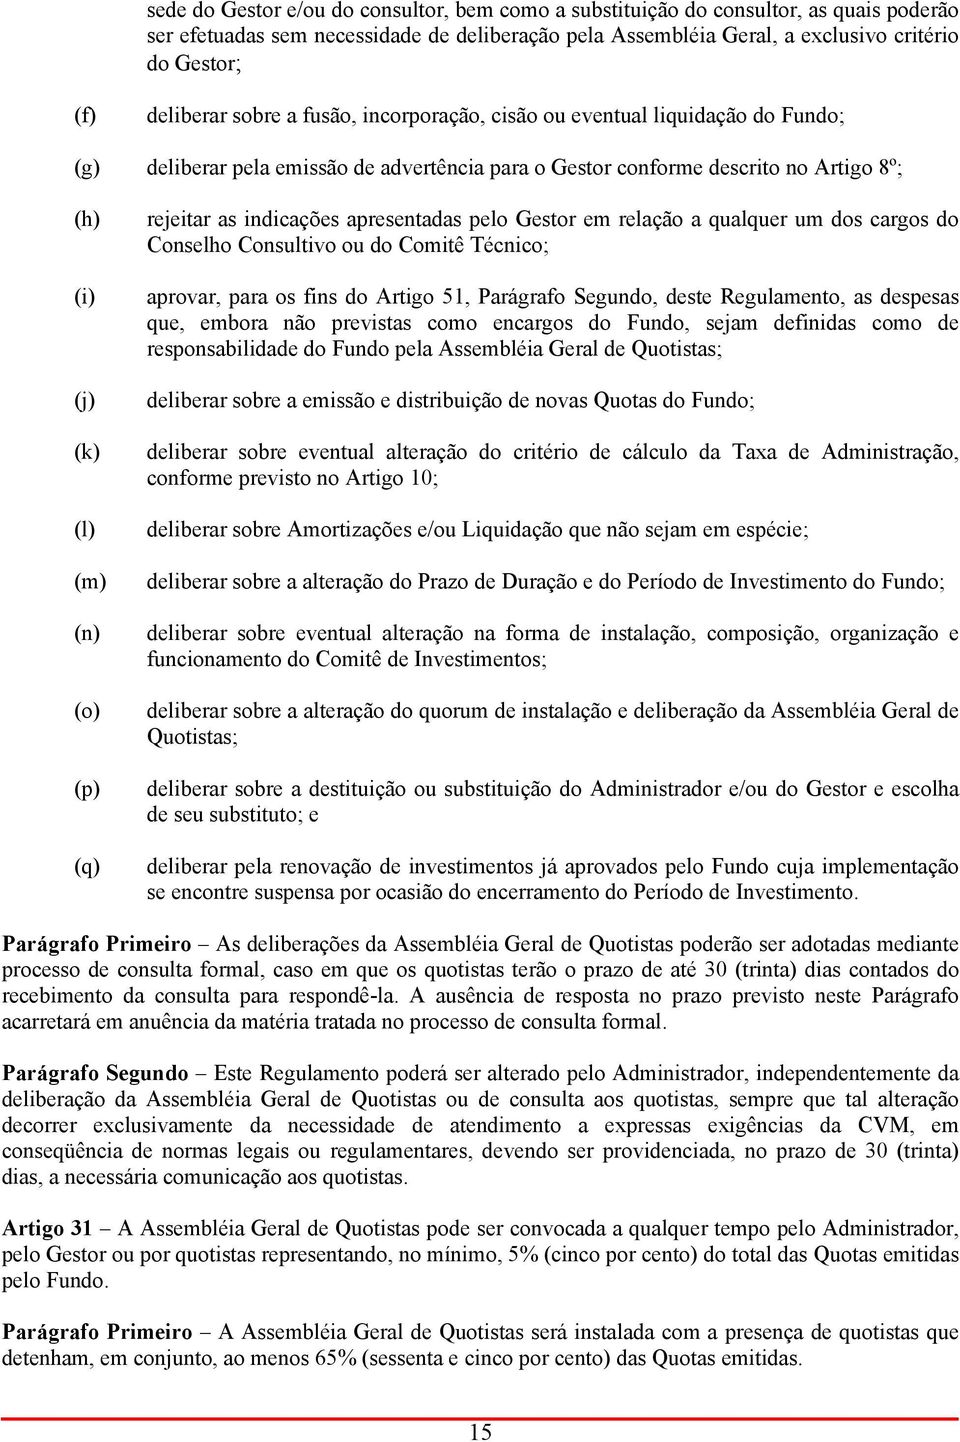 (p) (q) rejeitar as indicações apresentadas pelo Gestor em relação a qualquer um dos cargos do Conselho Consultivo ou do Comitê Técnico; aprovar, para os fins do Artigo 51, Parágrafo Segundo, deste